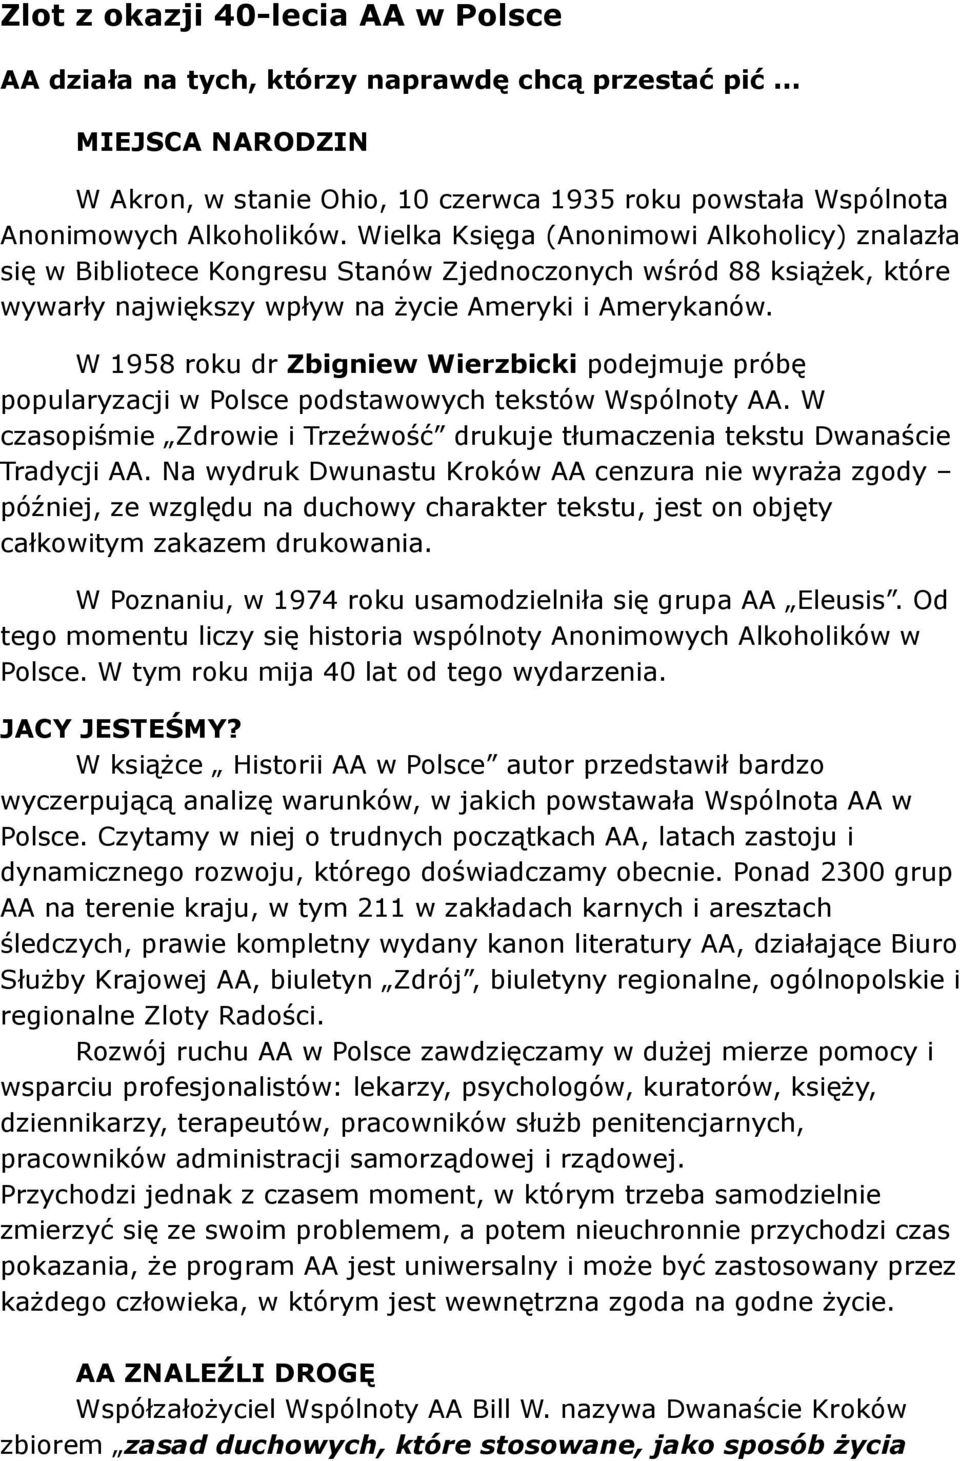 W 1958 roku dr Zbigniew Wierzbicki podejmuje próbę popularyzacji w Polsce podstawowych tekstów Wspólnoty AA. W czasopiśmie Zdrowie i Trzeźwość drukuje tłumaczenia tekstu Dwanaście Tradycji AA.